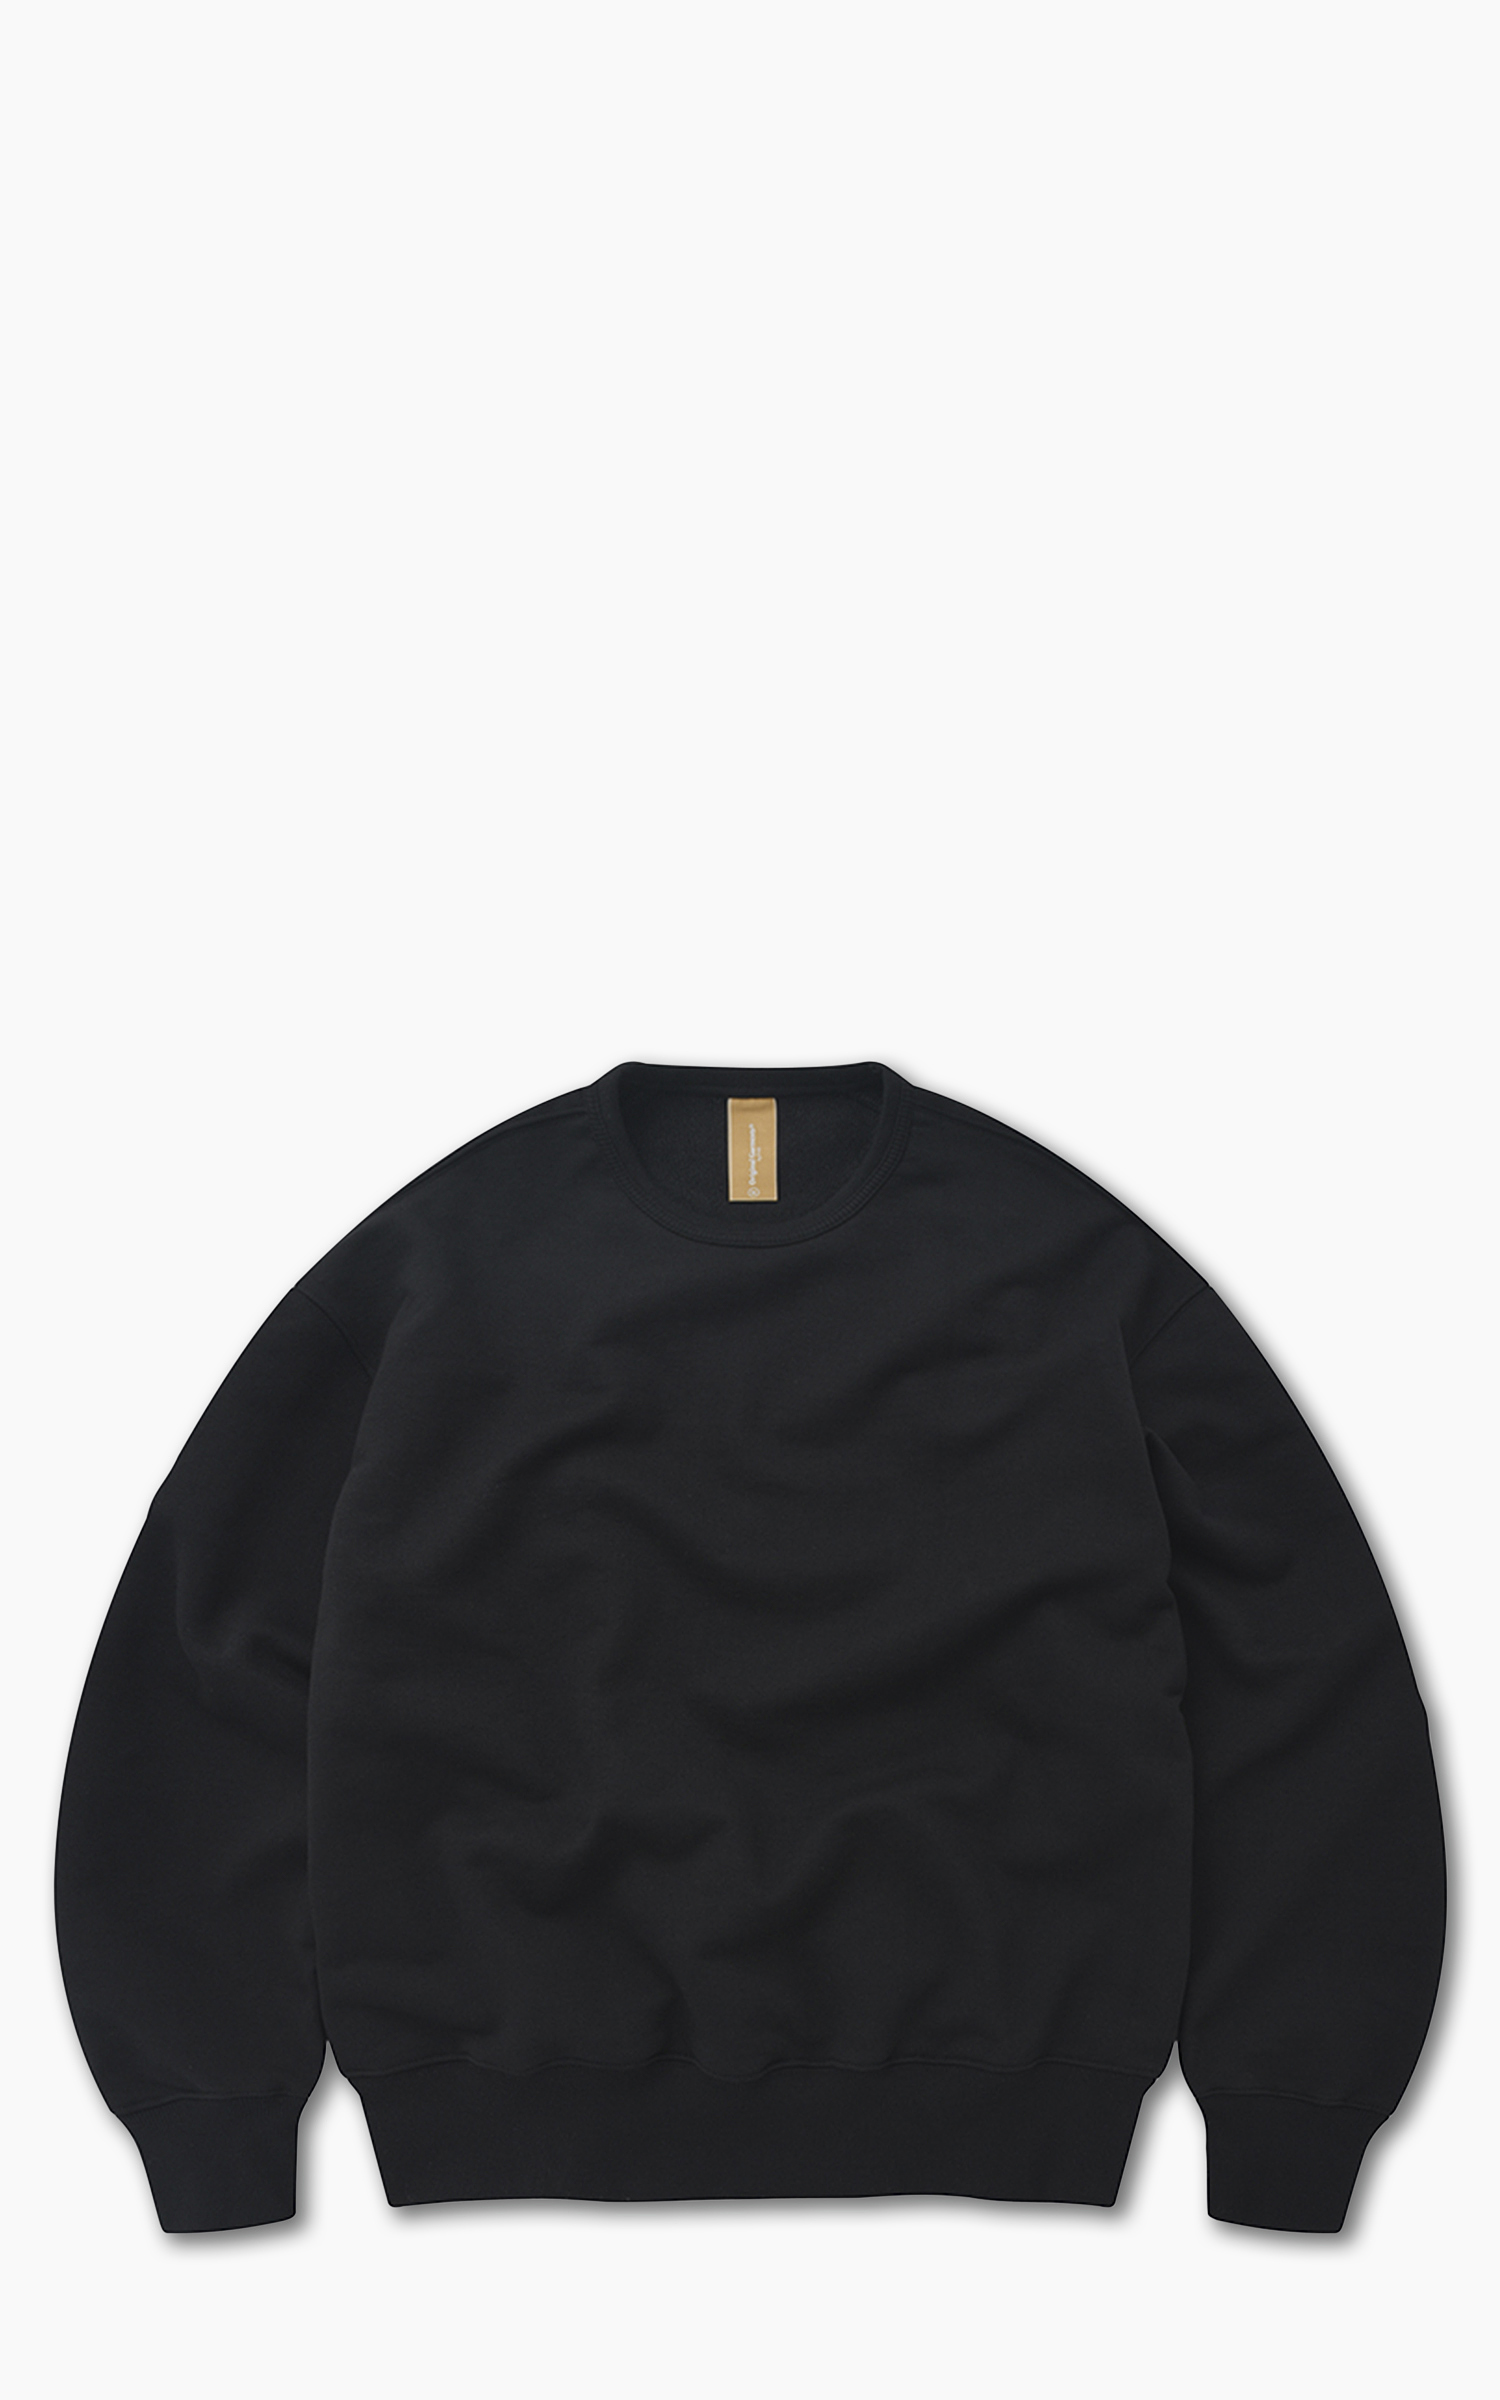 FrizmWORKS OG Heavyweight Sweatshirt 002 Black | Cultizm